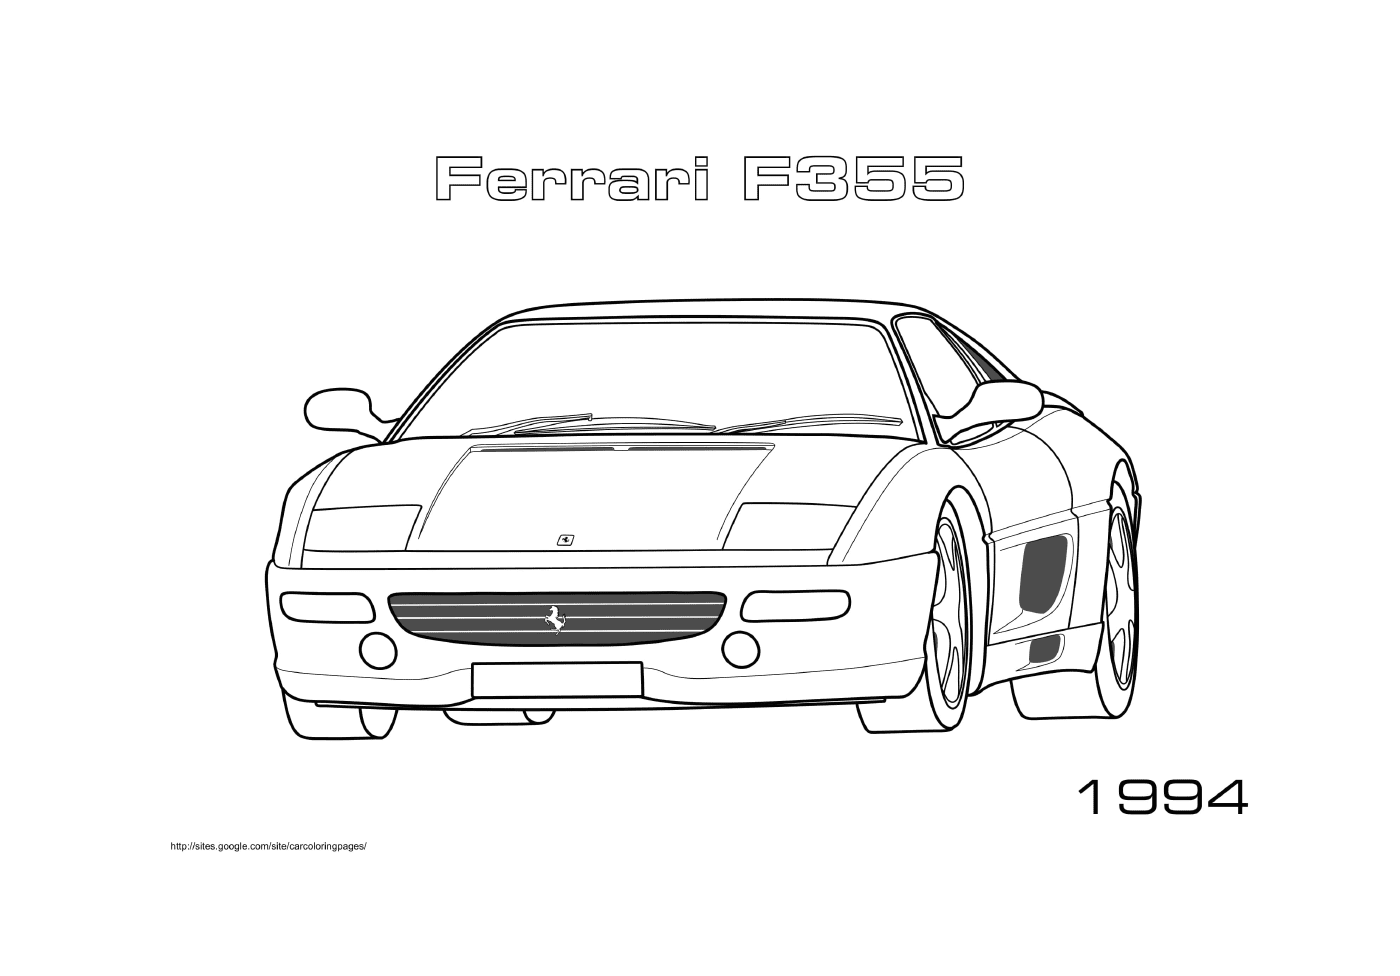  Ein Ferrari F355 1994 Auto 